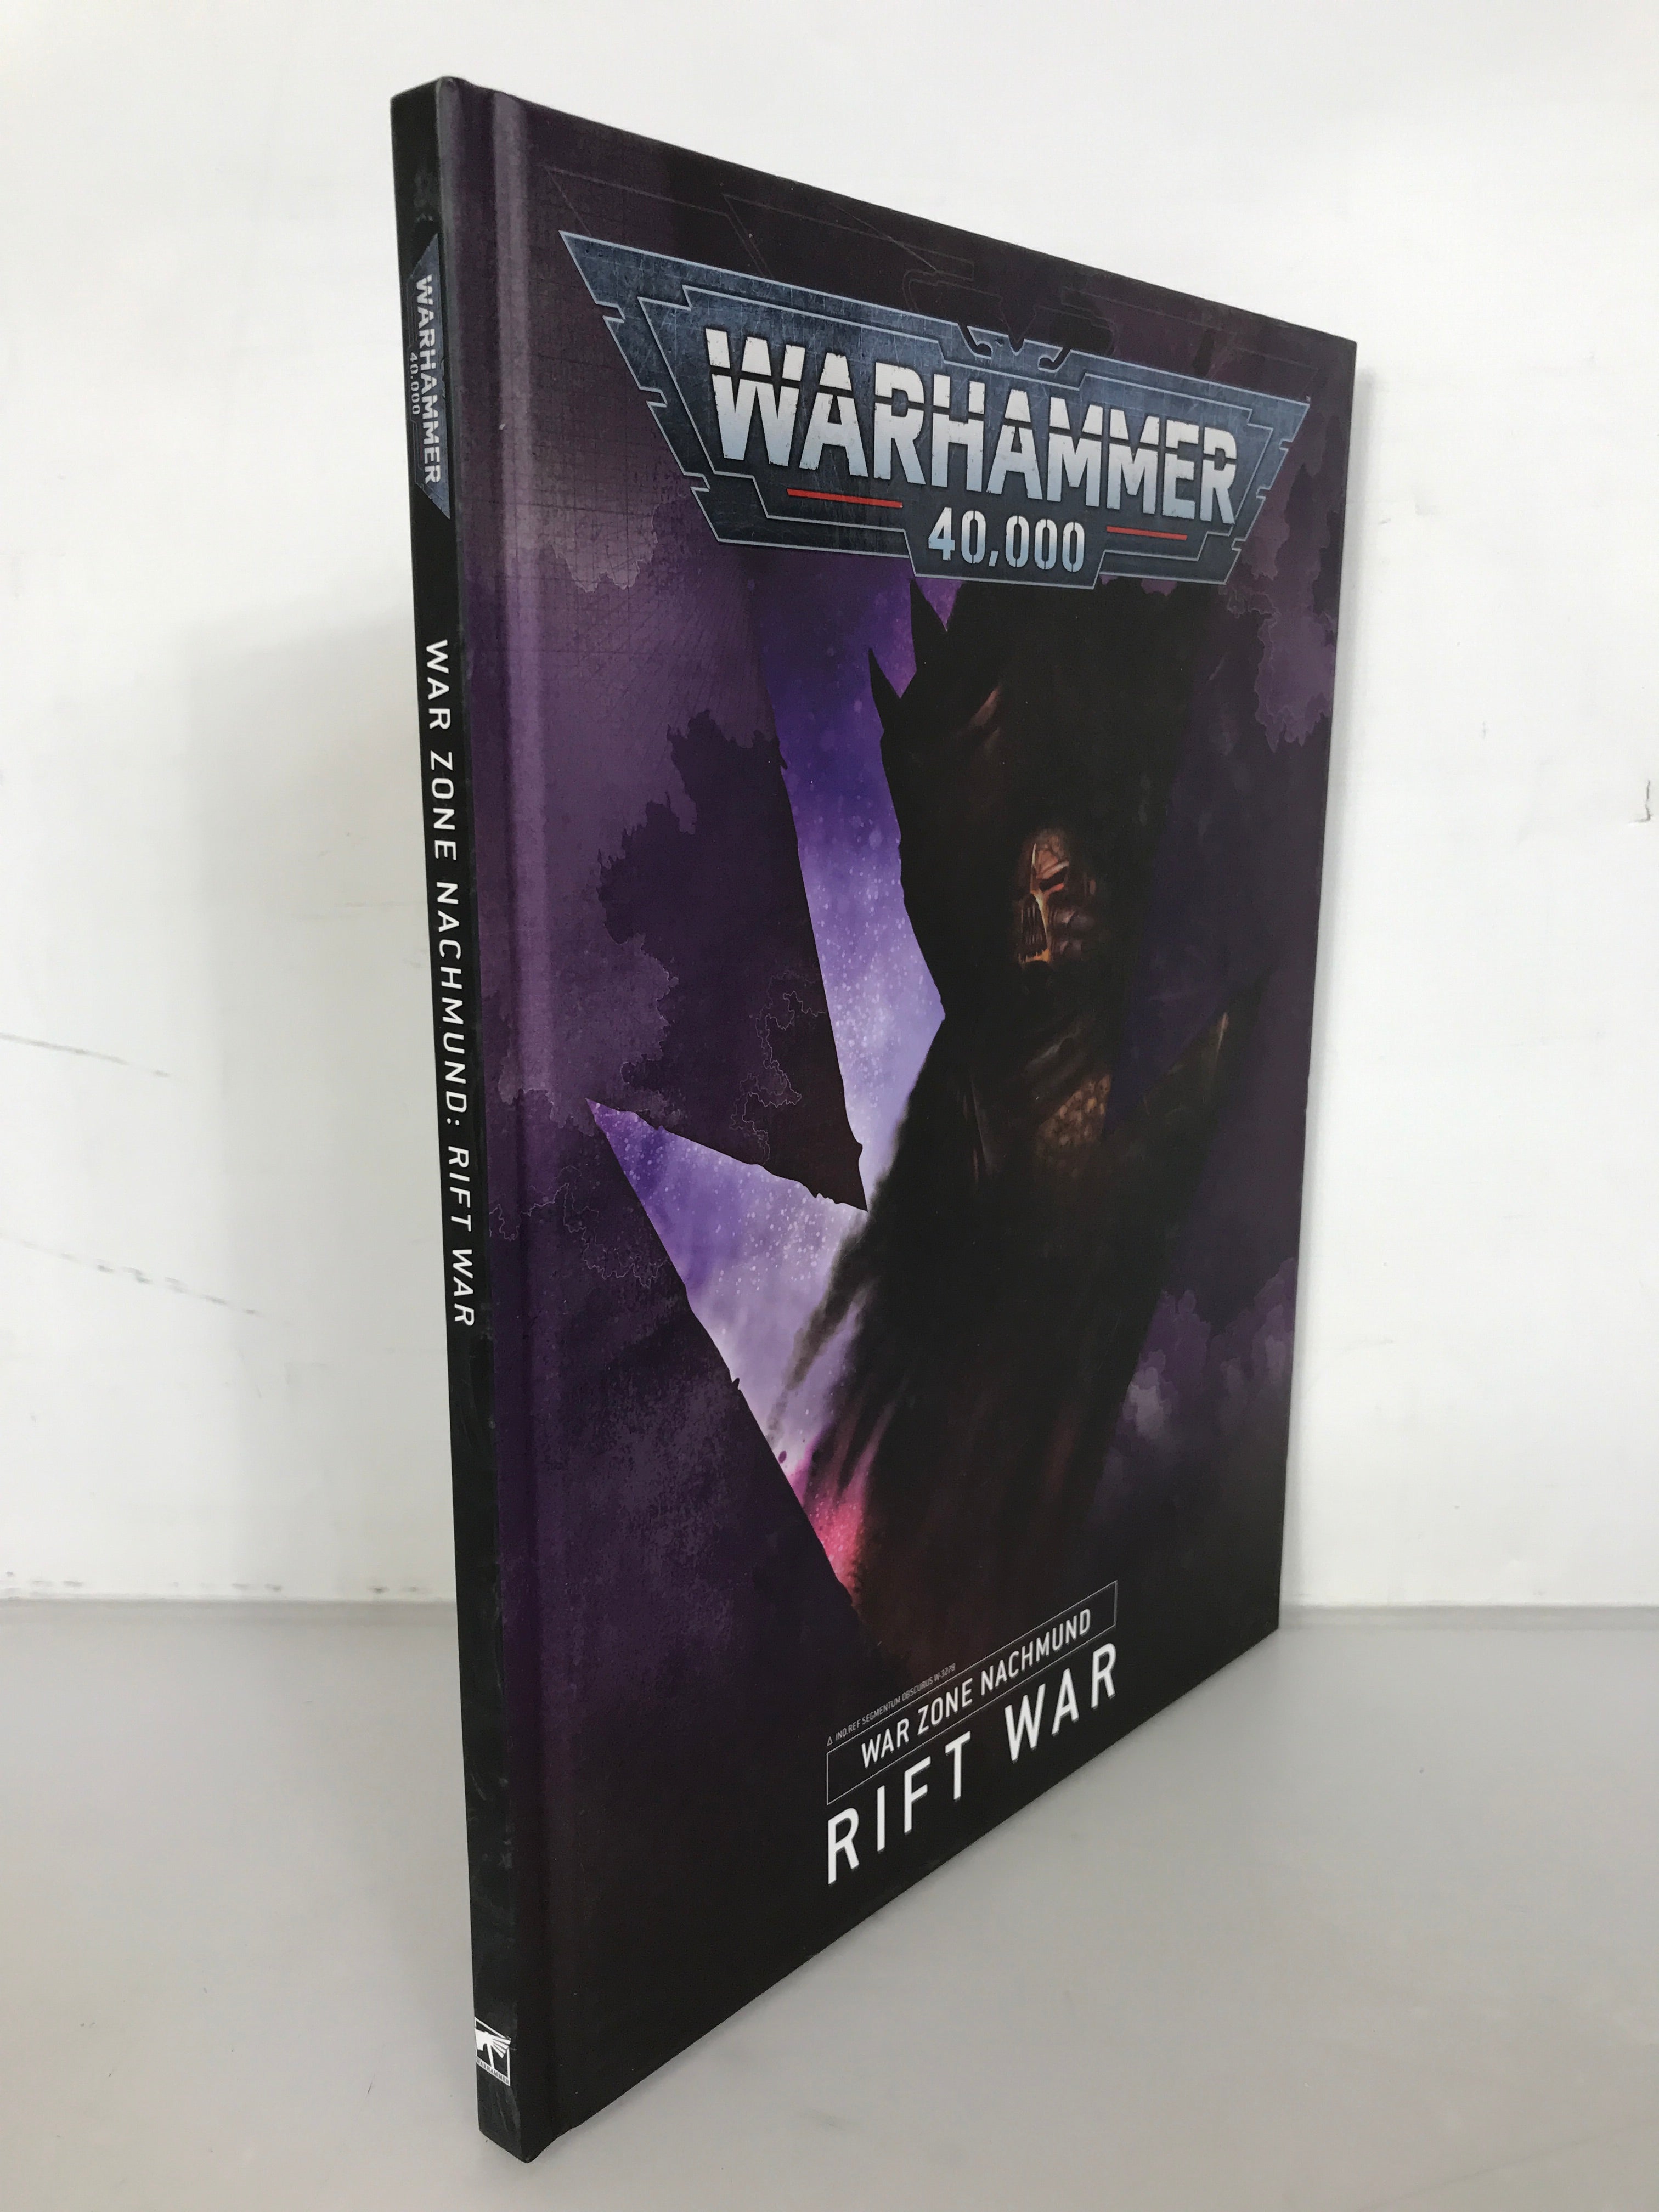 Warhammer 40K War Zone Nachmund: Rift War